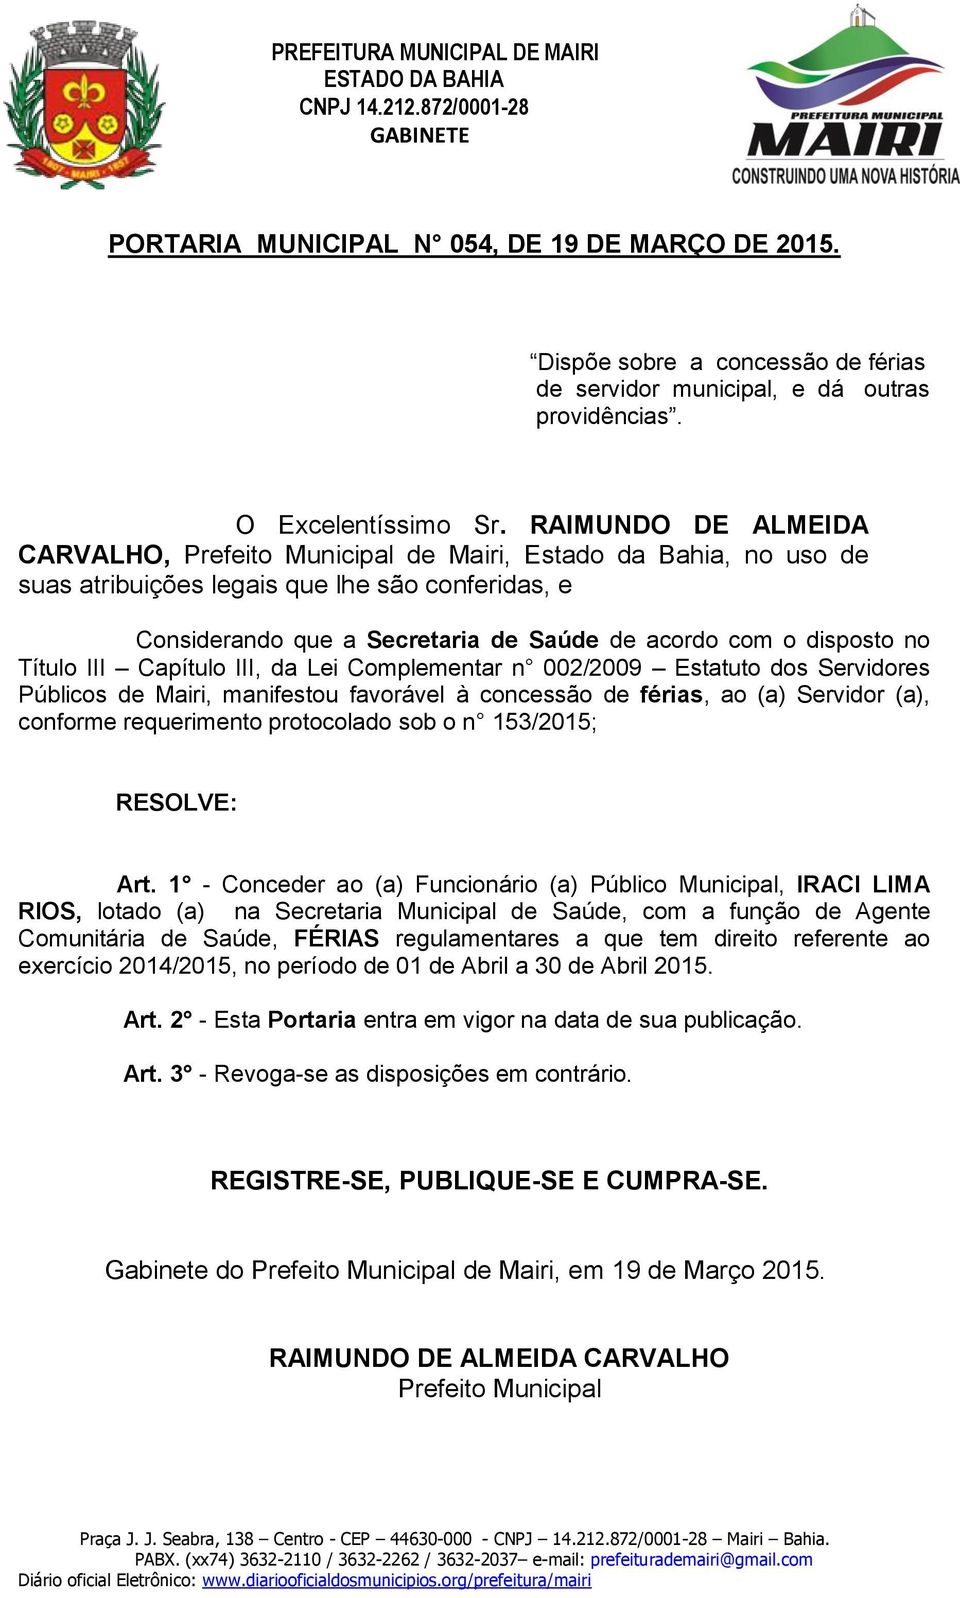 1 - Conceder ao (a) Funcionário (a) Público Municipal, IRACI LIMA RIOS, lotado (a) na Secretaria Municipal de Saúde,